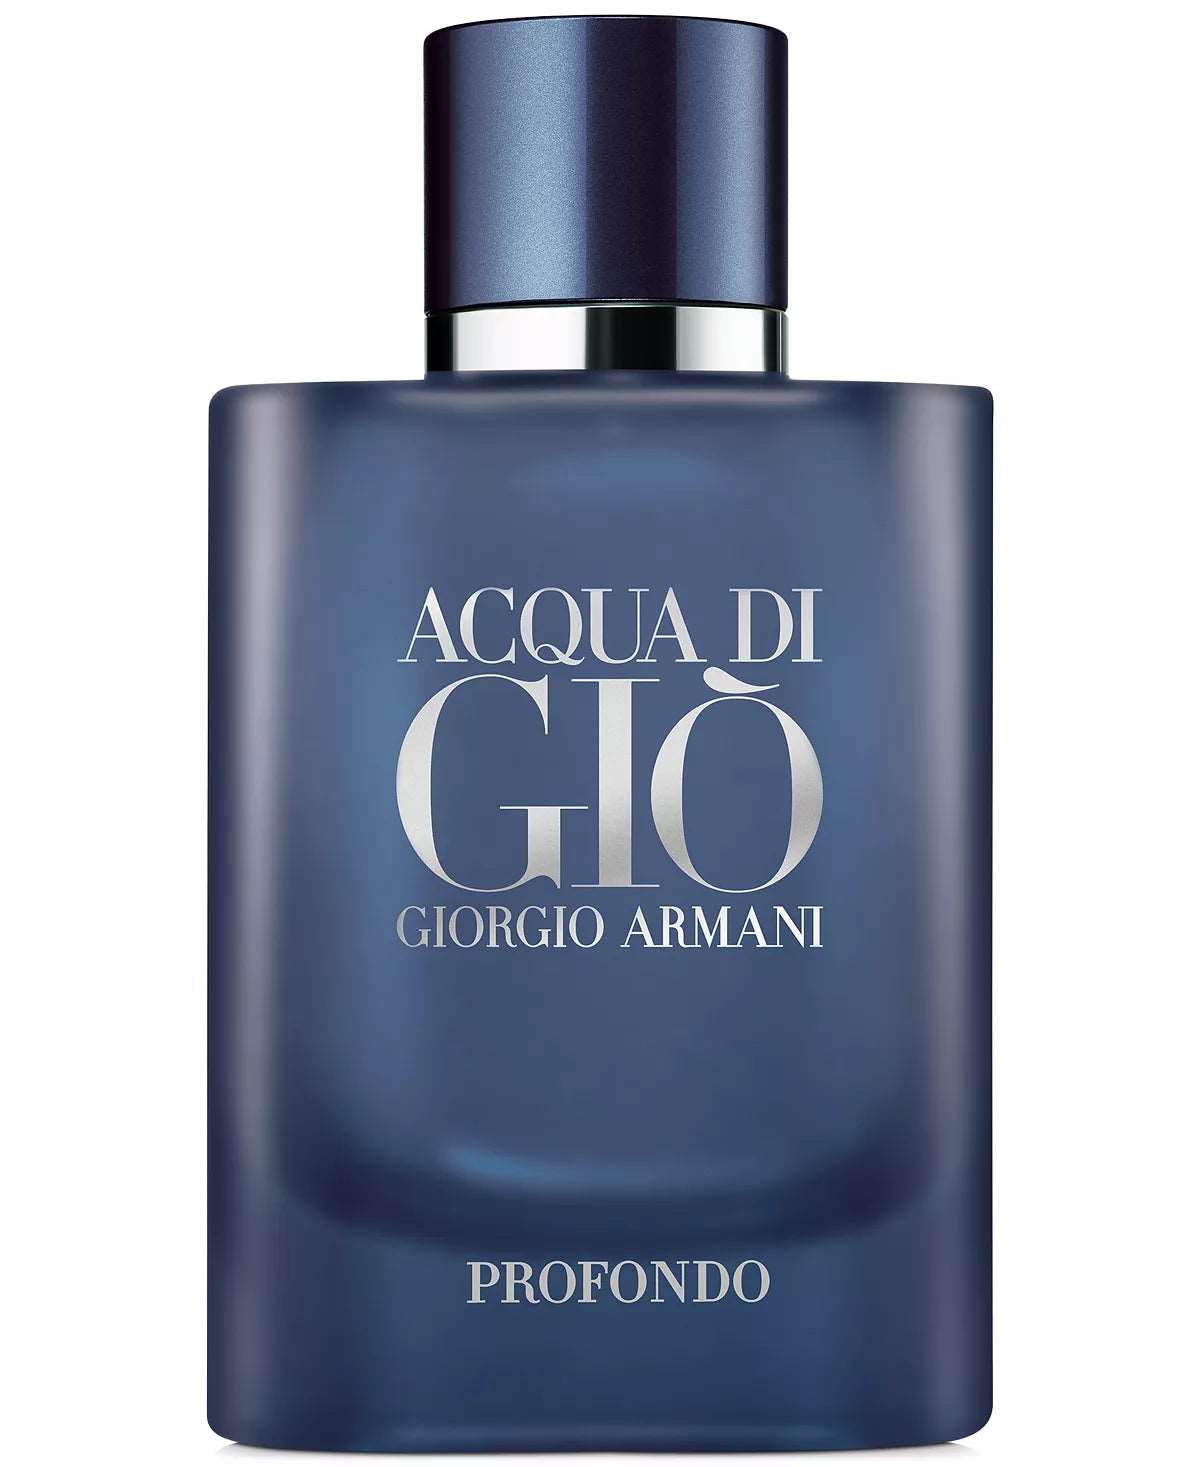 Acqua Di Gio Profondo Giorgio Armani Eau de Parfum 2.5 fl oz